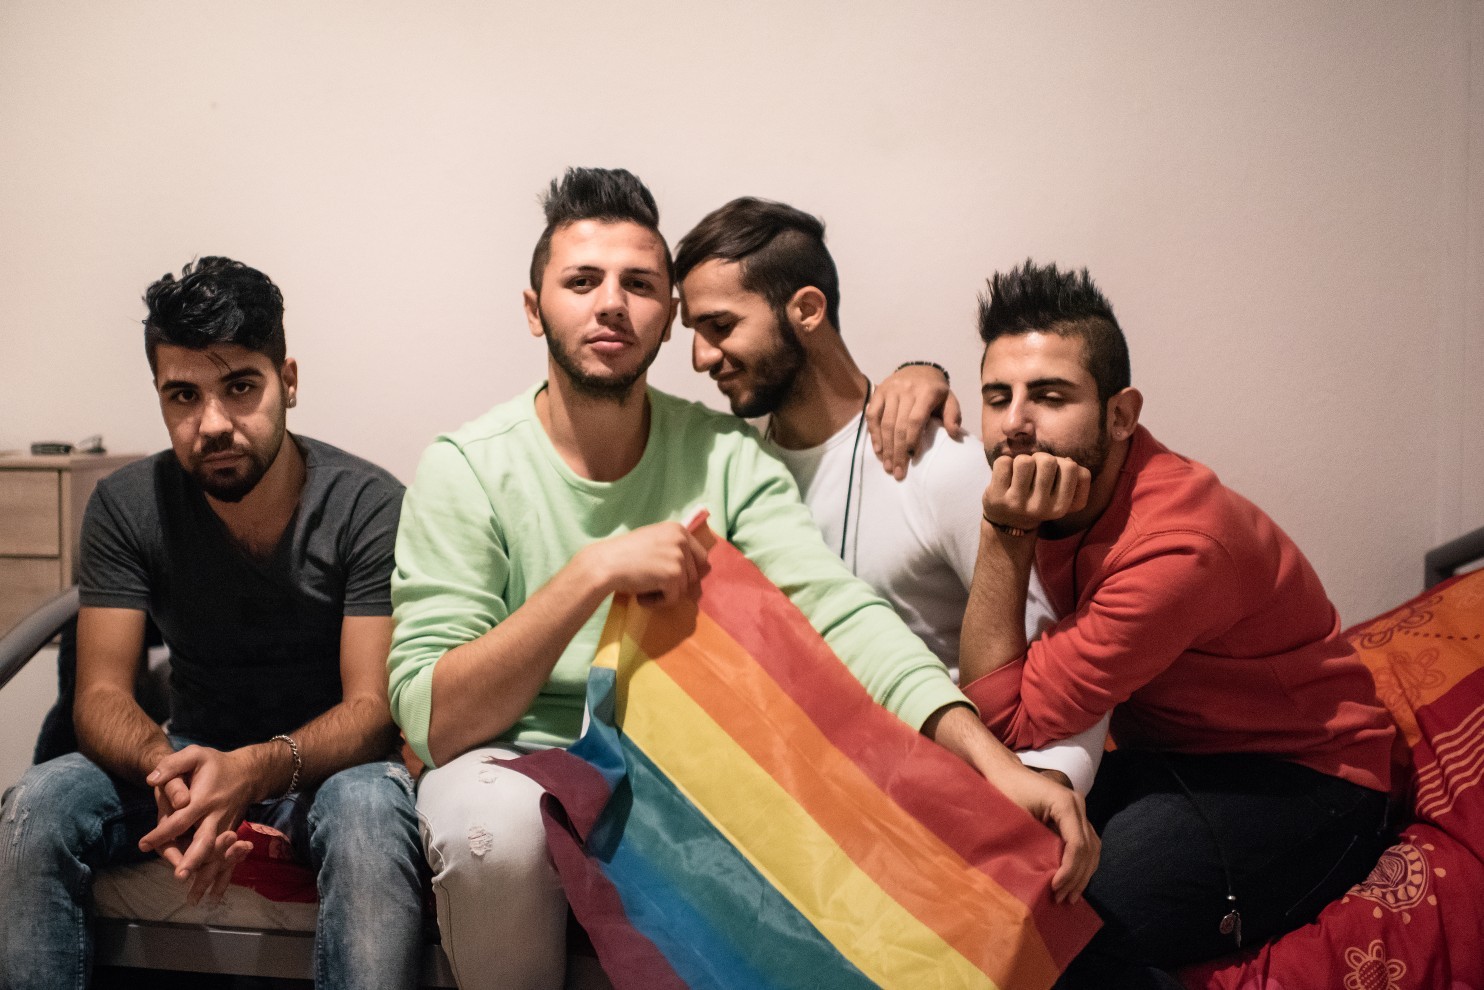 مثليو الجنس يتعرضون لمضايقات داخل ملاجىء ومخيمات اللجوء في ألمانيا